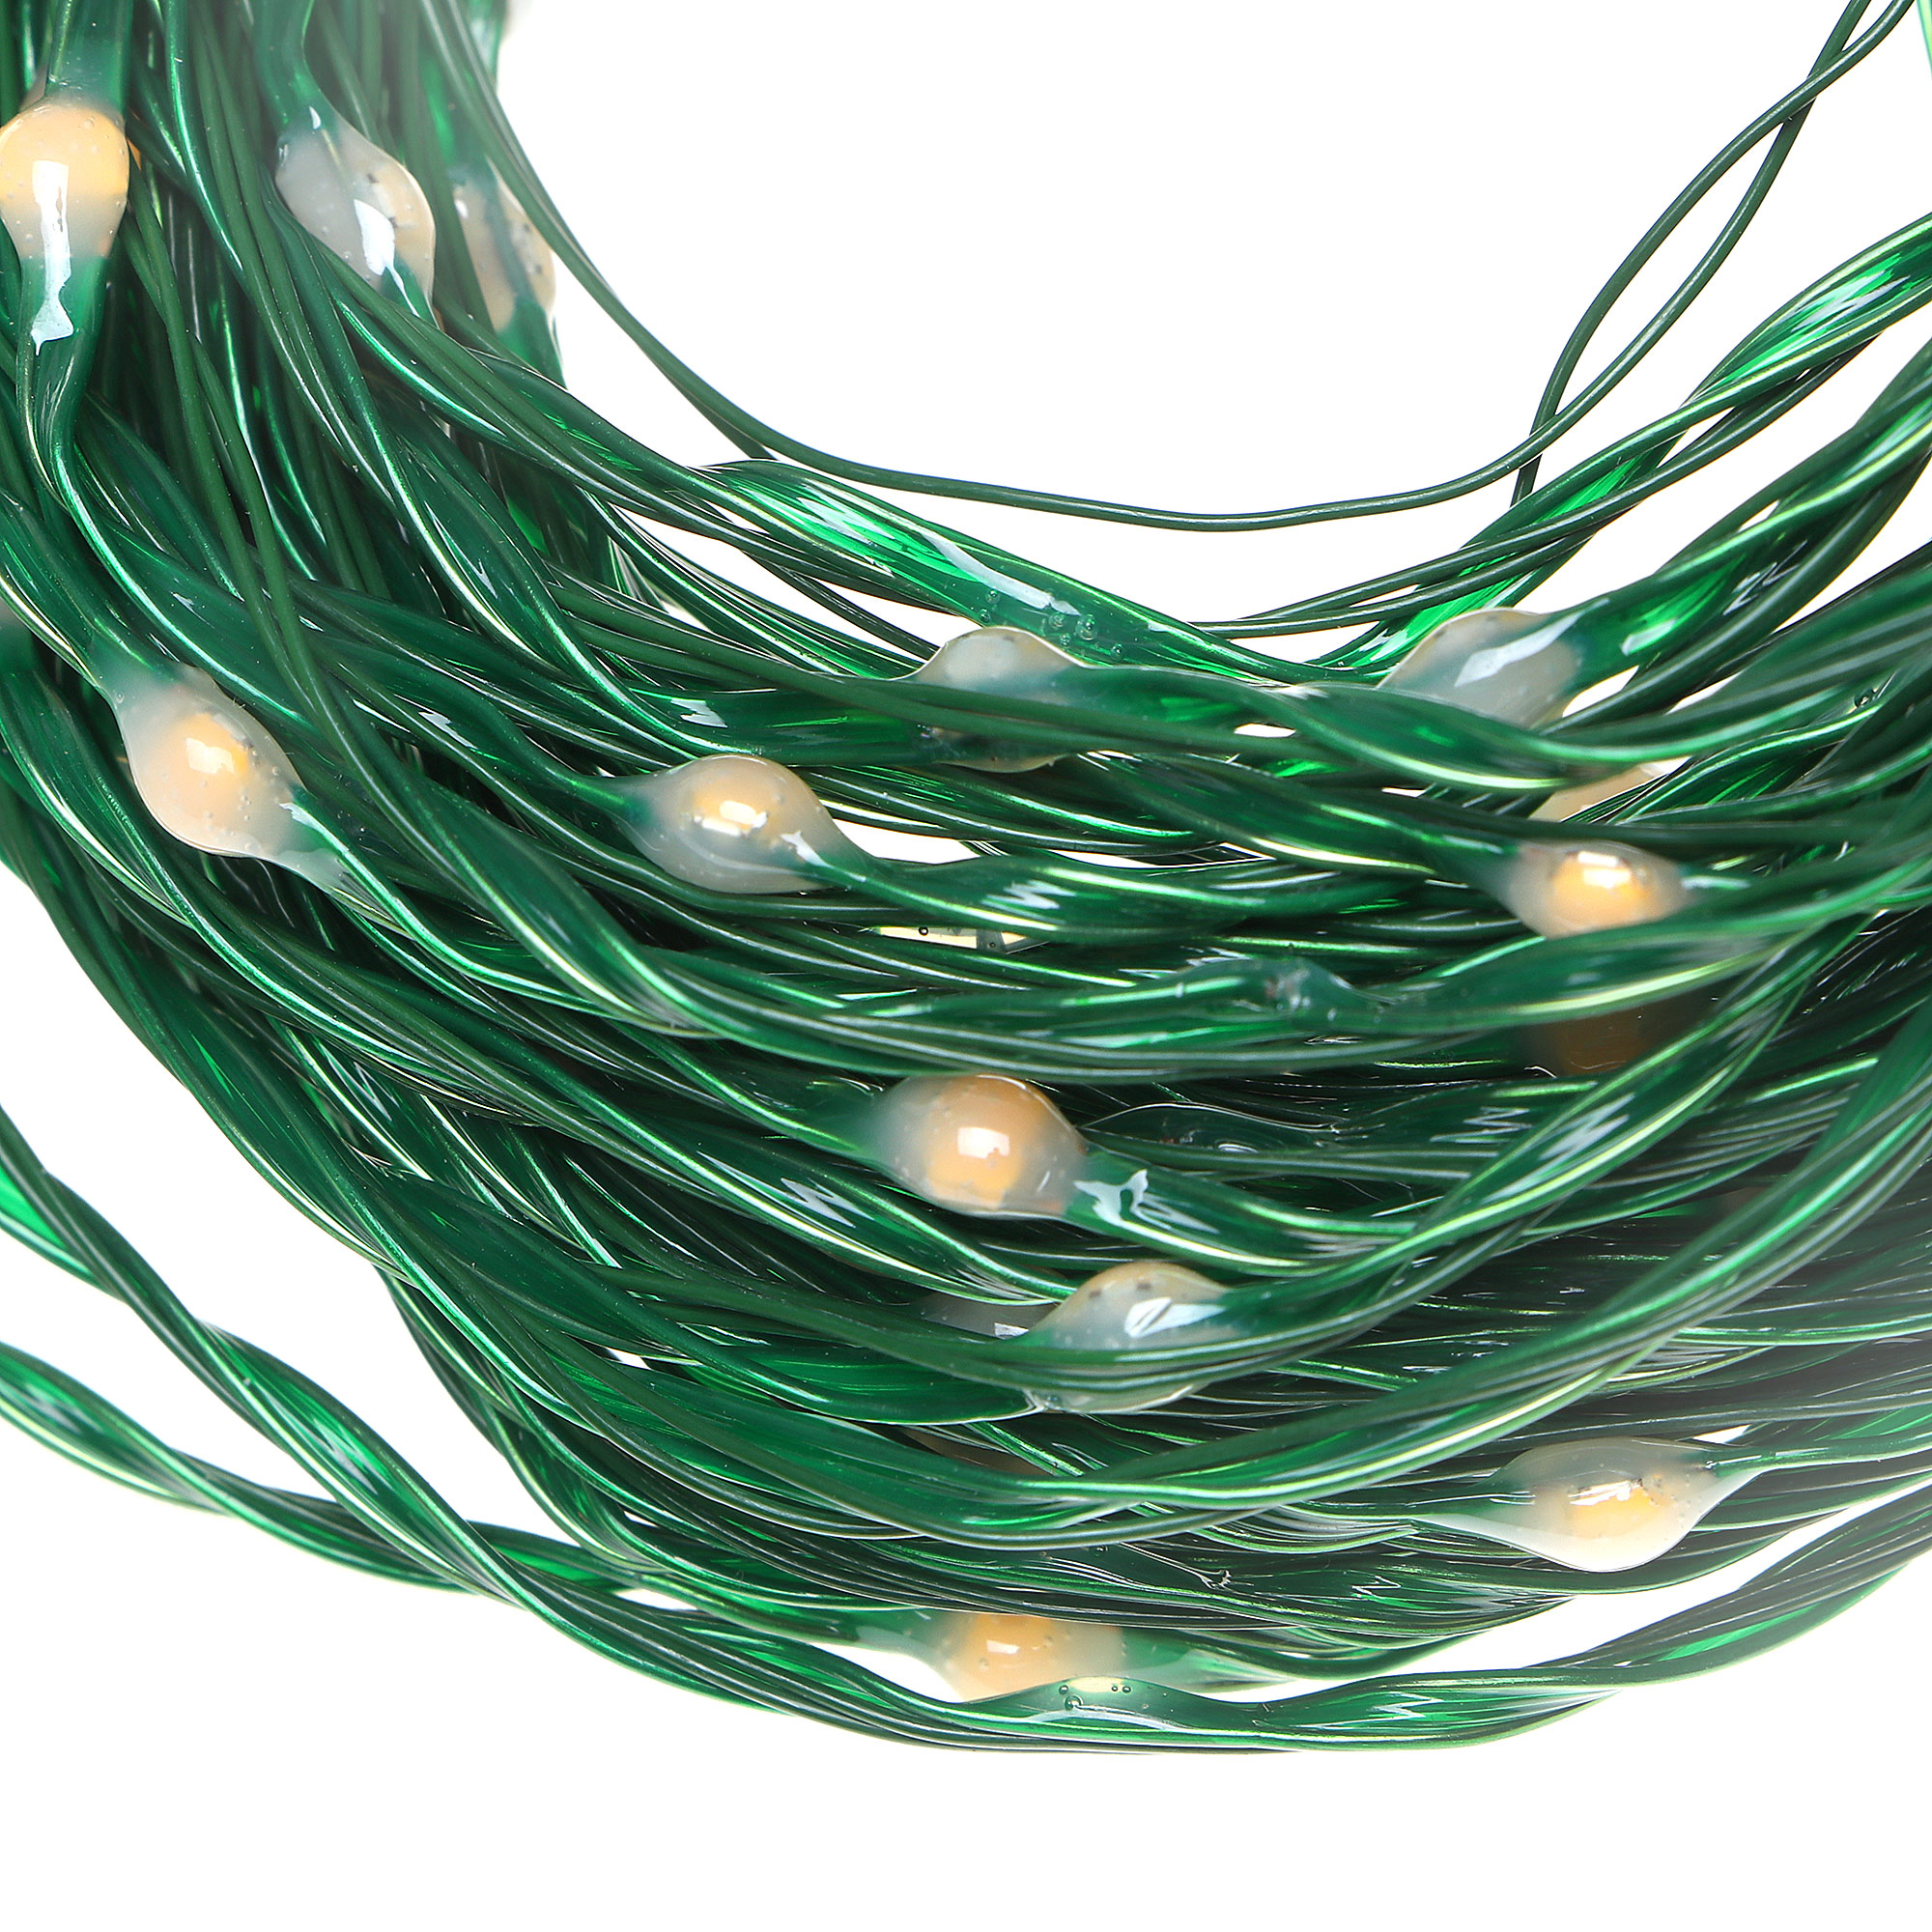 Электрогирлянда Lotti Профессионал 50 м 500 MicroLEDS зеленый кабель, цвет теплый белый - фото 5